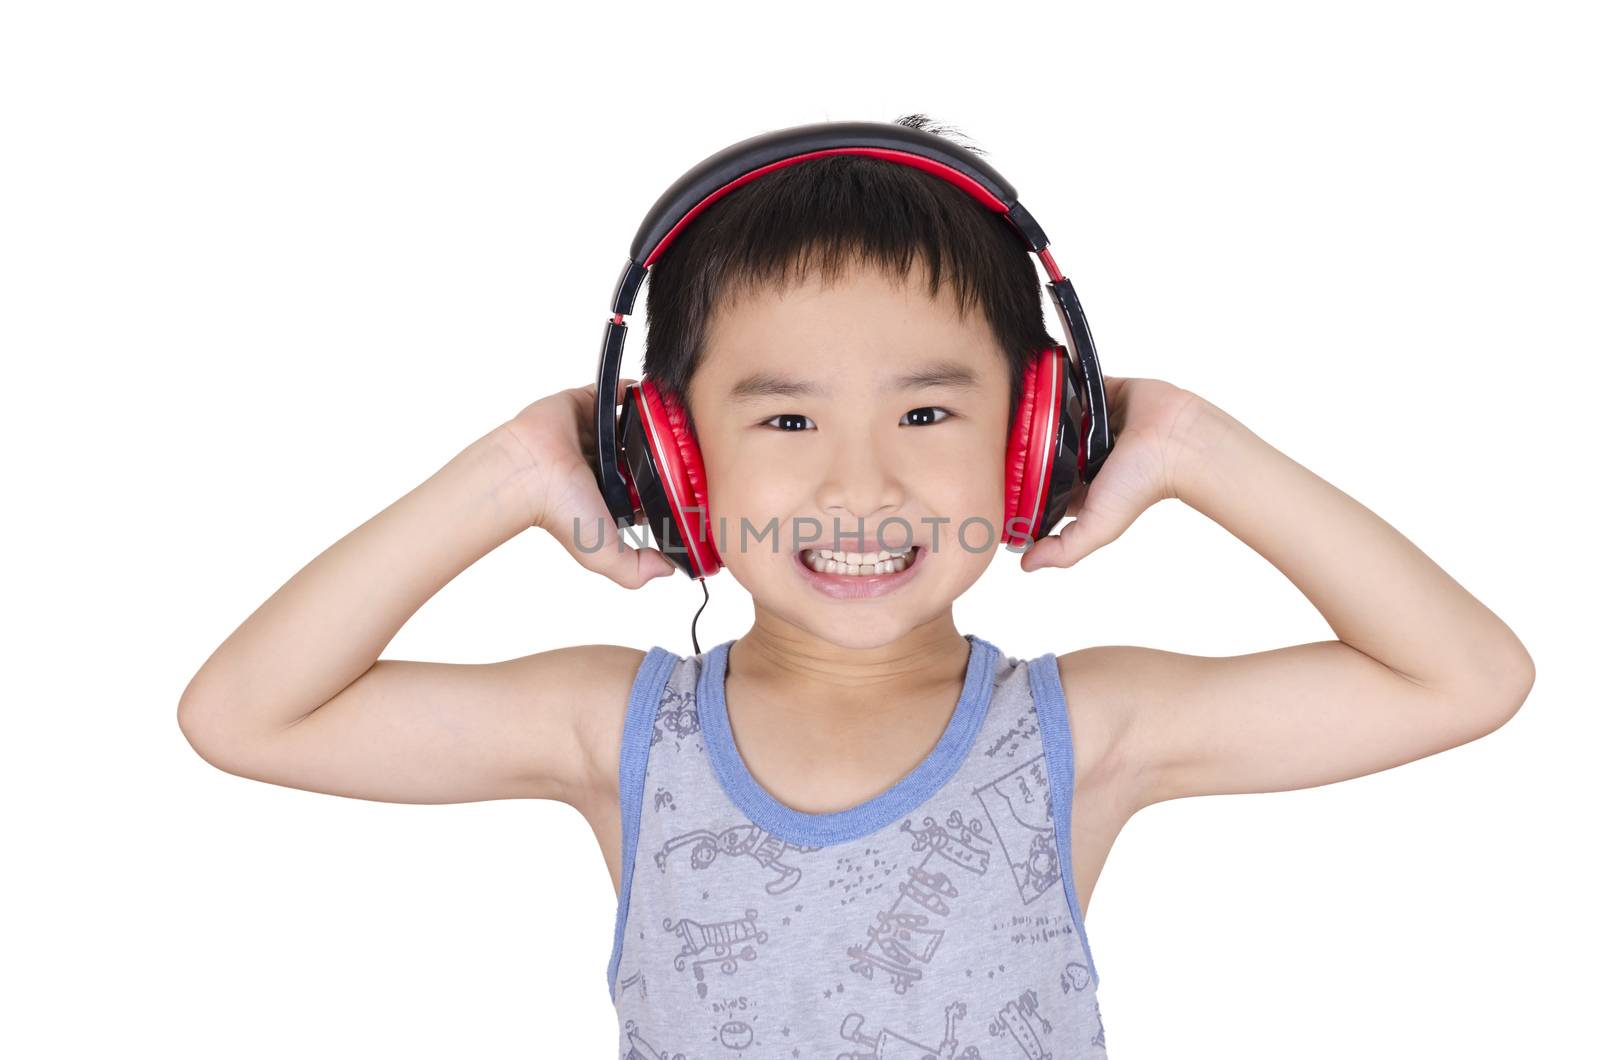 Cute children listen to music by FrankyLiu